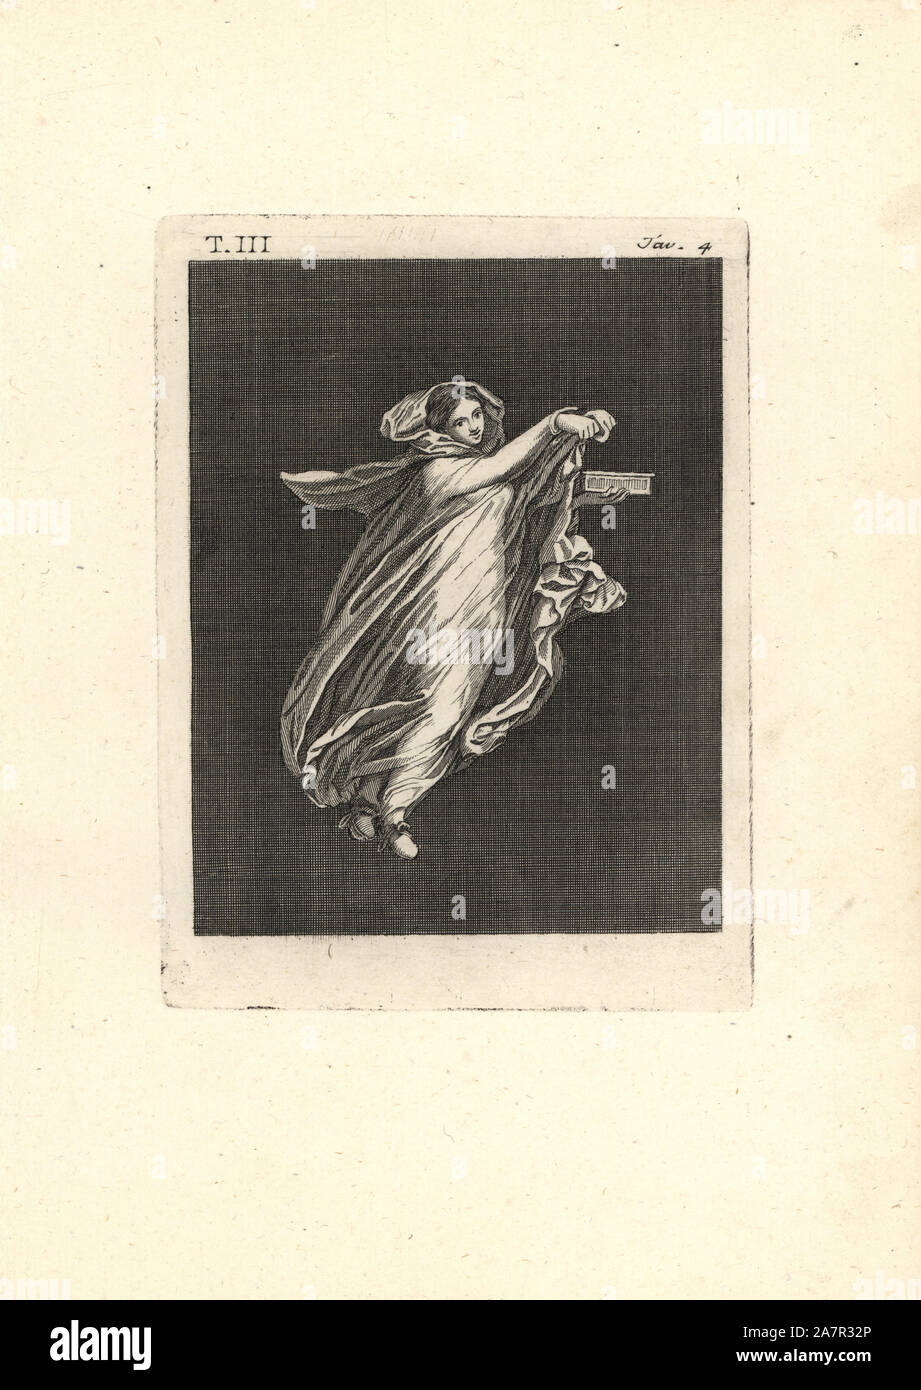 Tänzerin in voluminösen transparenten Roben mit einem Kasten vielleicht in Anspielung auf die Geheimnisse des Bacchus. Kupferstich von Tommaso Piroli von seinem antiken Herculaneum (Antichita di Ercolano), Rom, 1790. Stockfoto